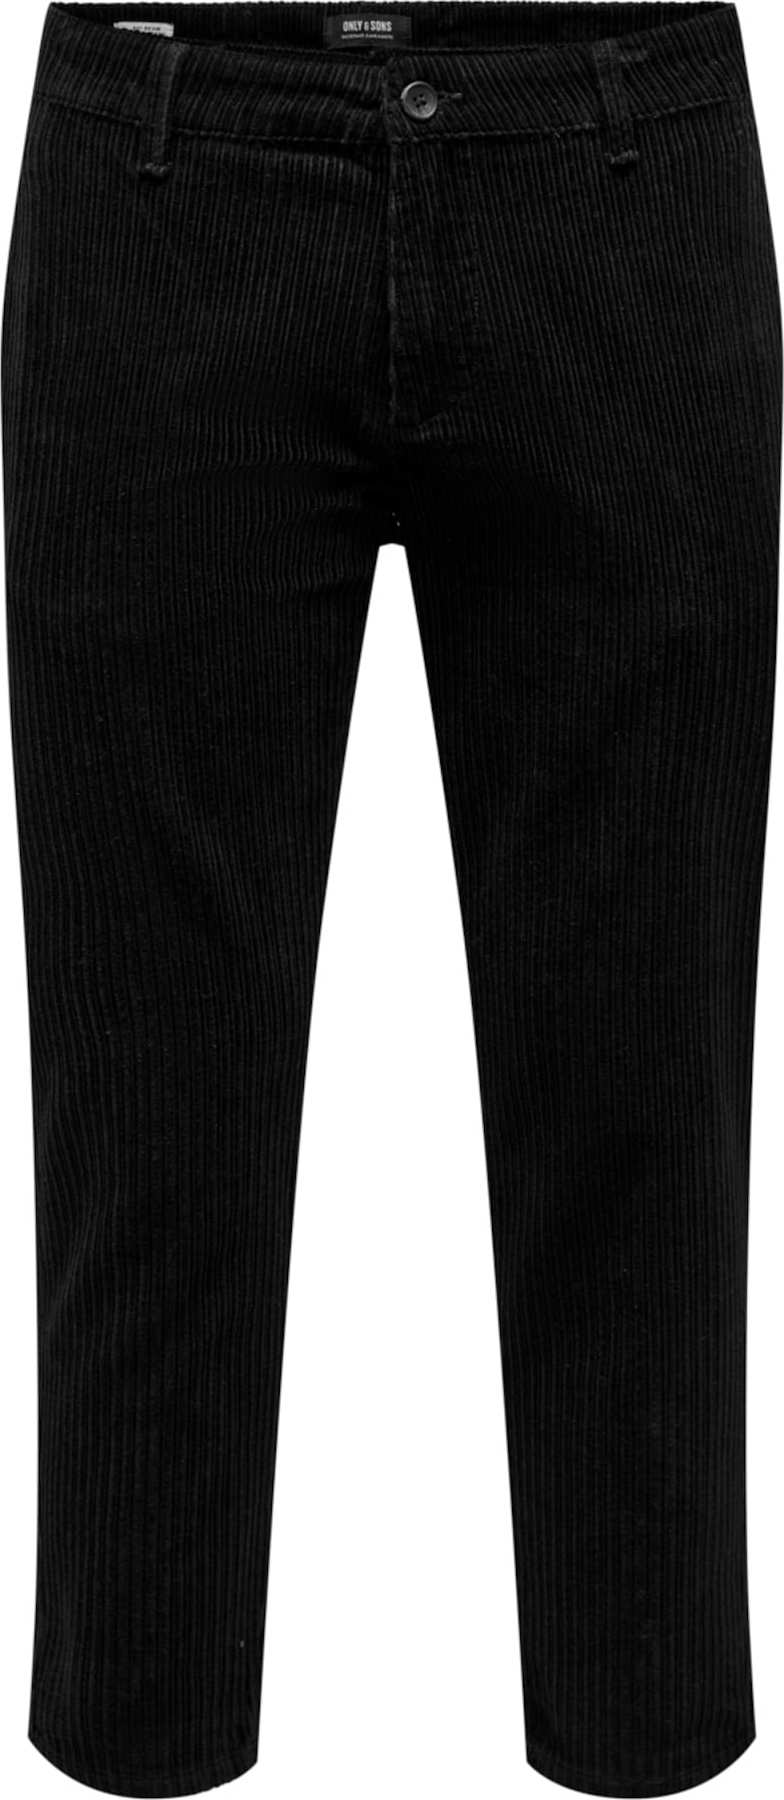 Only & Sons Chino kalhoty 'Avi' černá